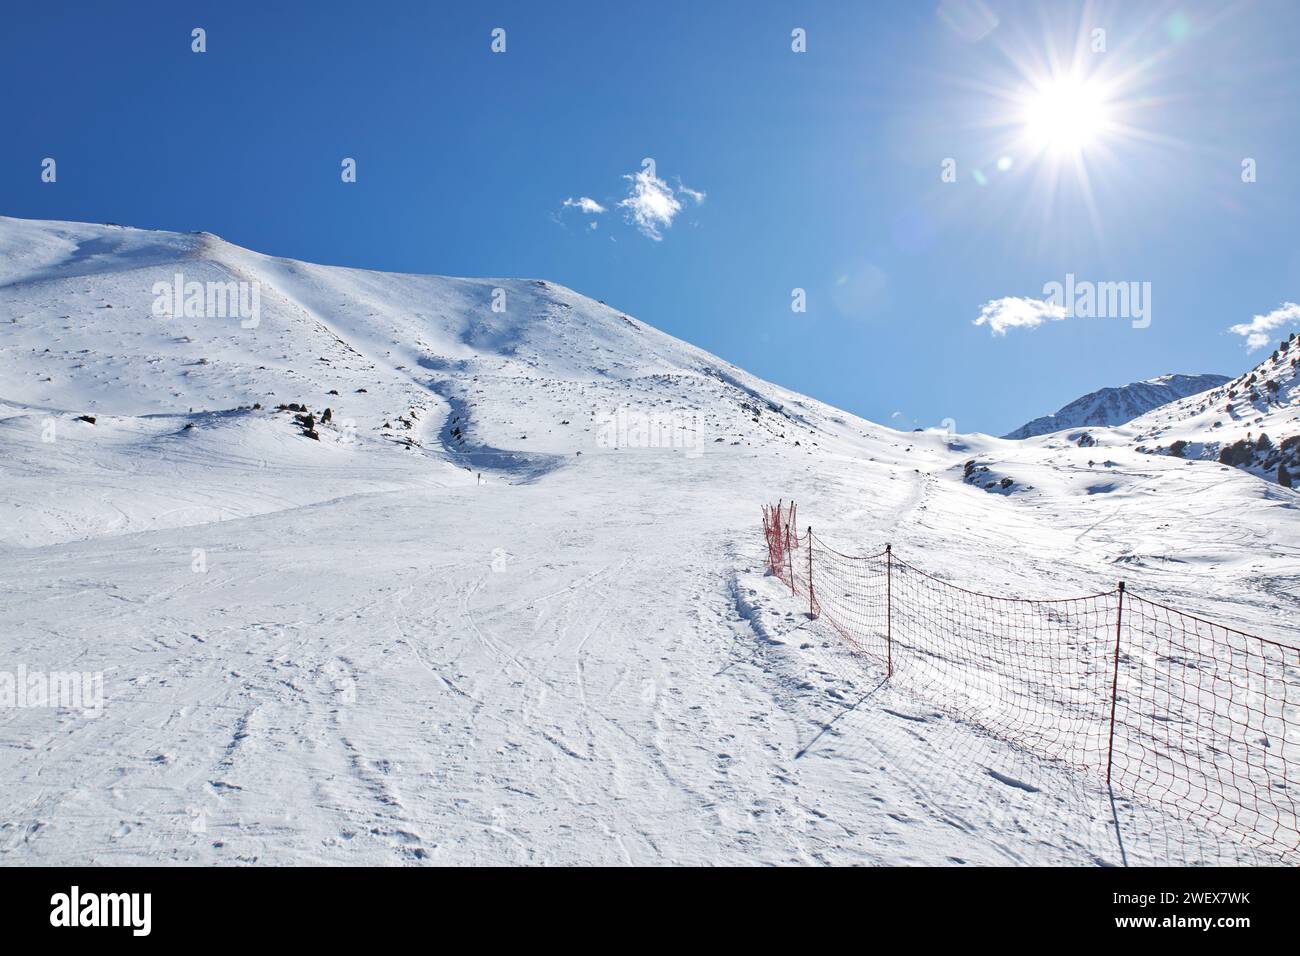 Piste vide à la station de ski, piste de montagne. Clôture en maille rouge marquant la zone dangereuse et la frontière de la route. Paysage de montagnes d'hiver au soleil Banque D'Images